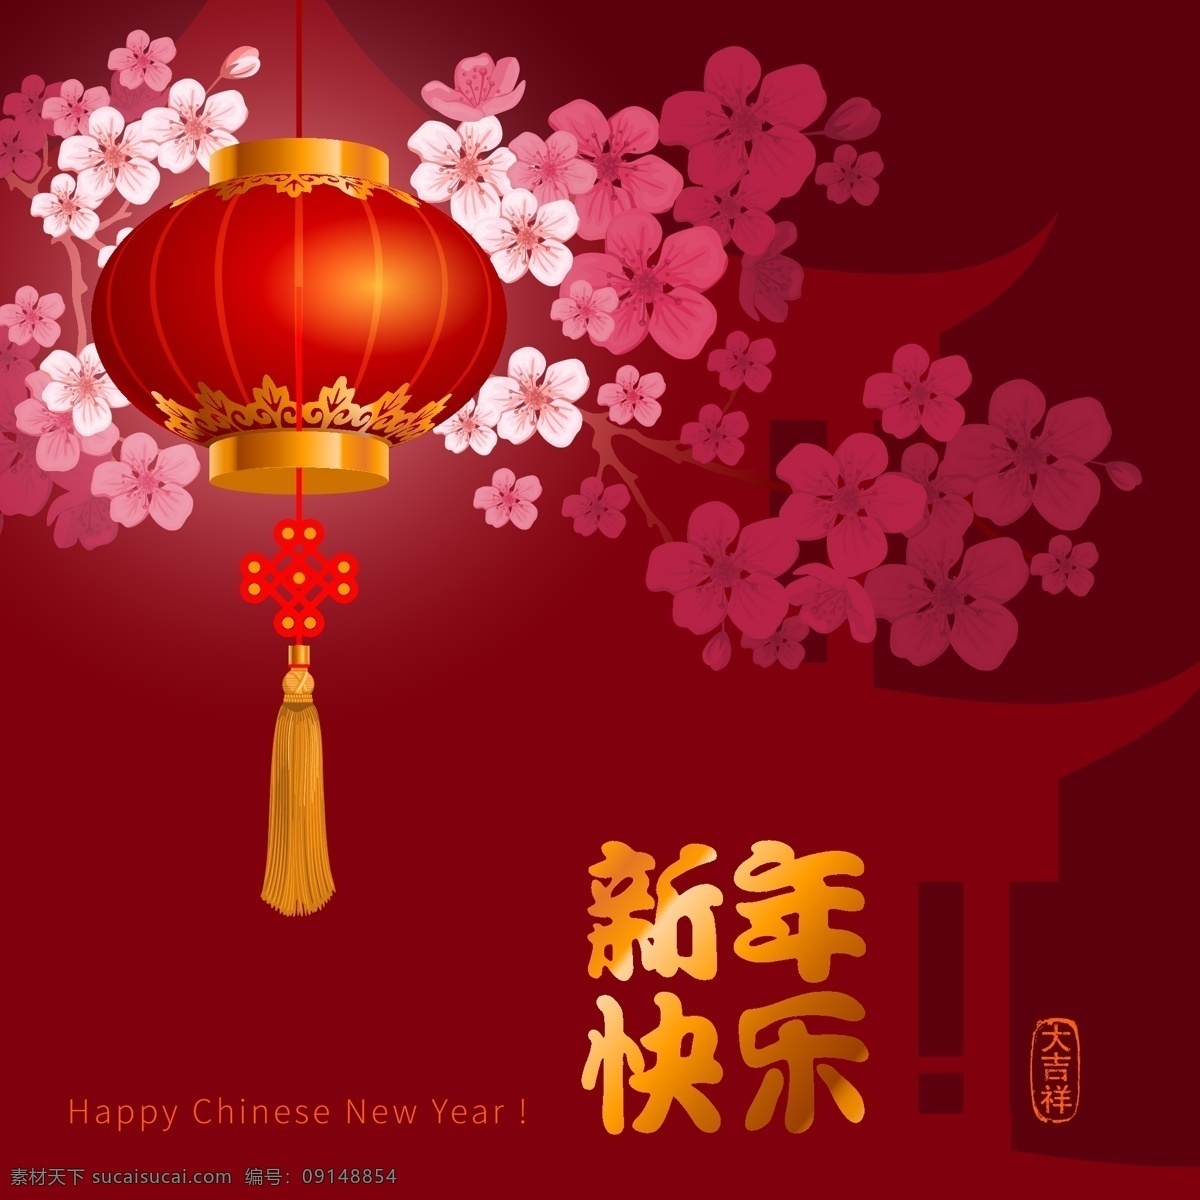 传统 新年 快乐 喜庆 节日 元素 红灯笼 桃花 新春